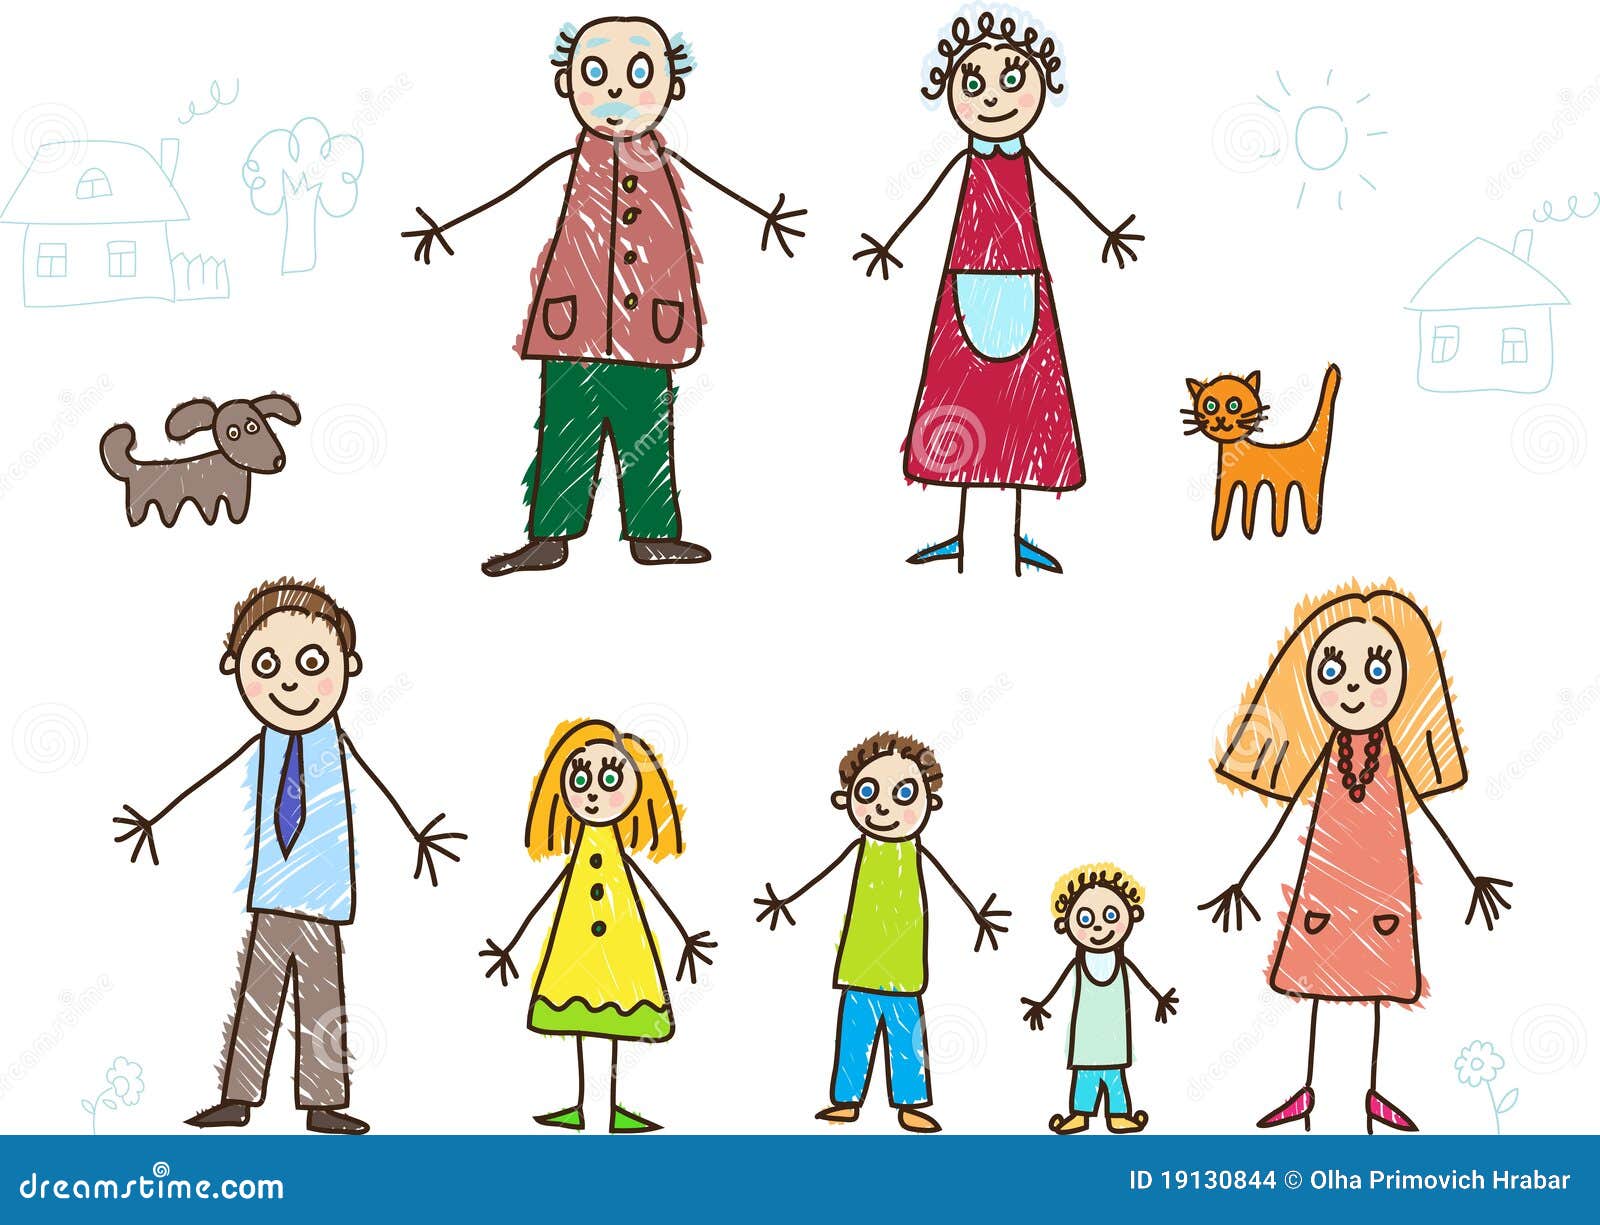 Нарисованные человечки:мама,папа, бабушка и дети